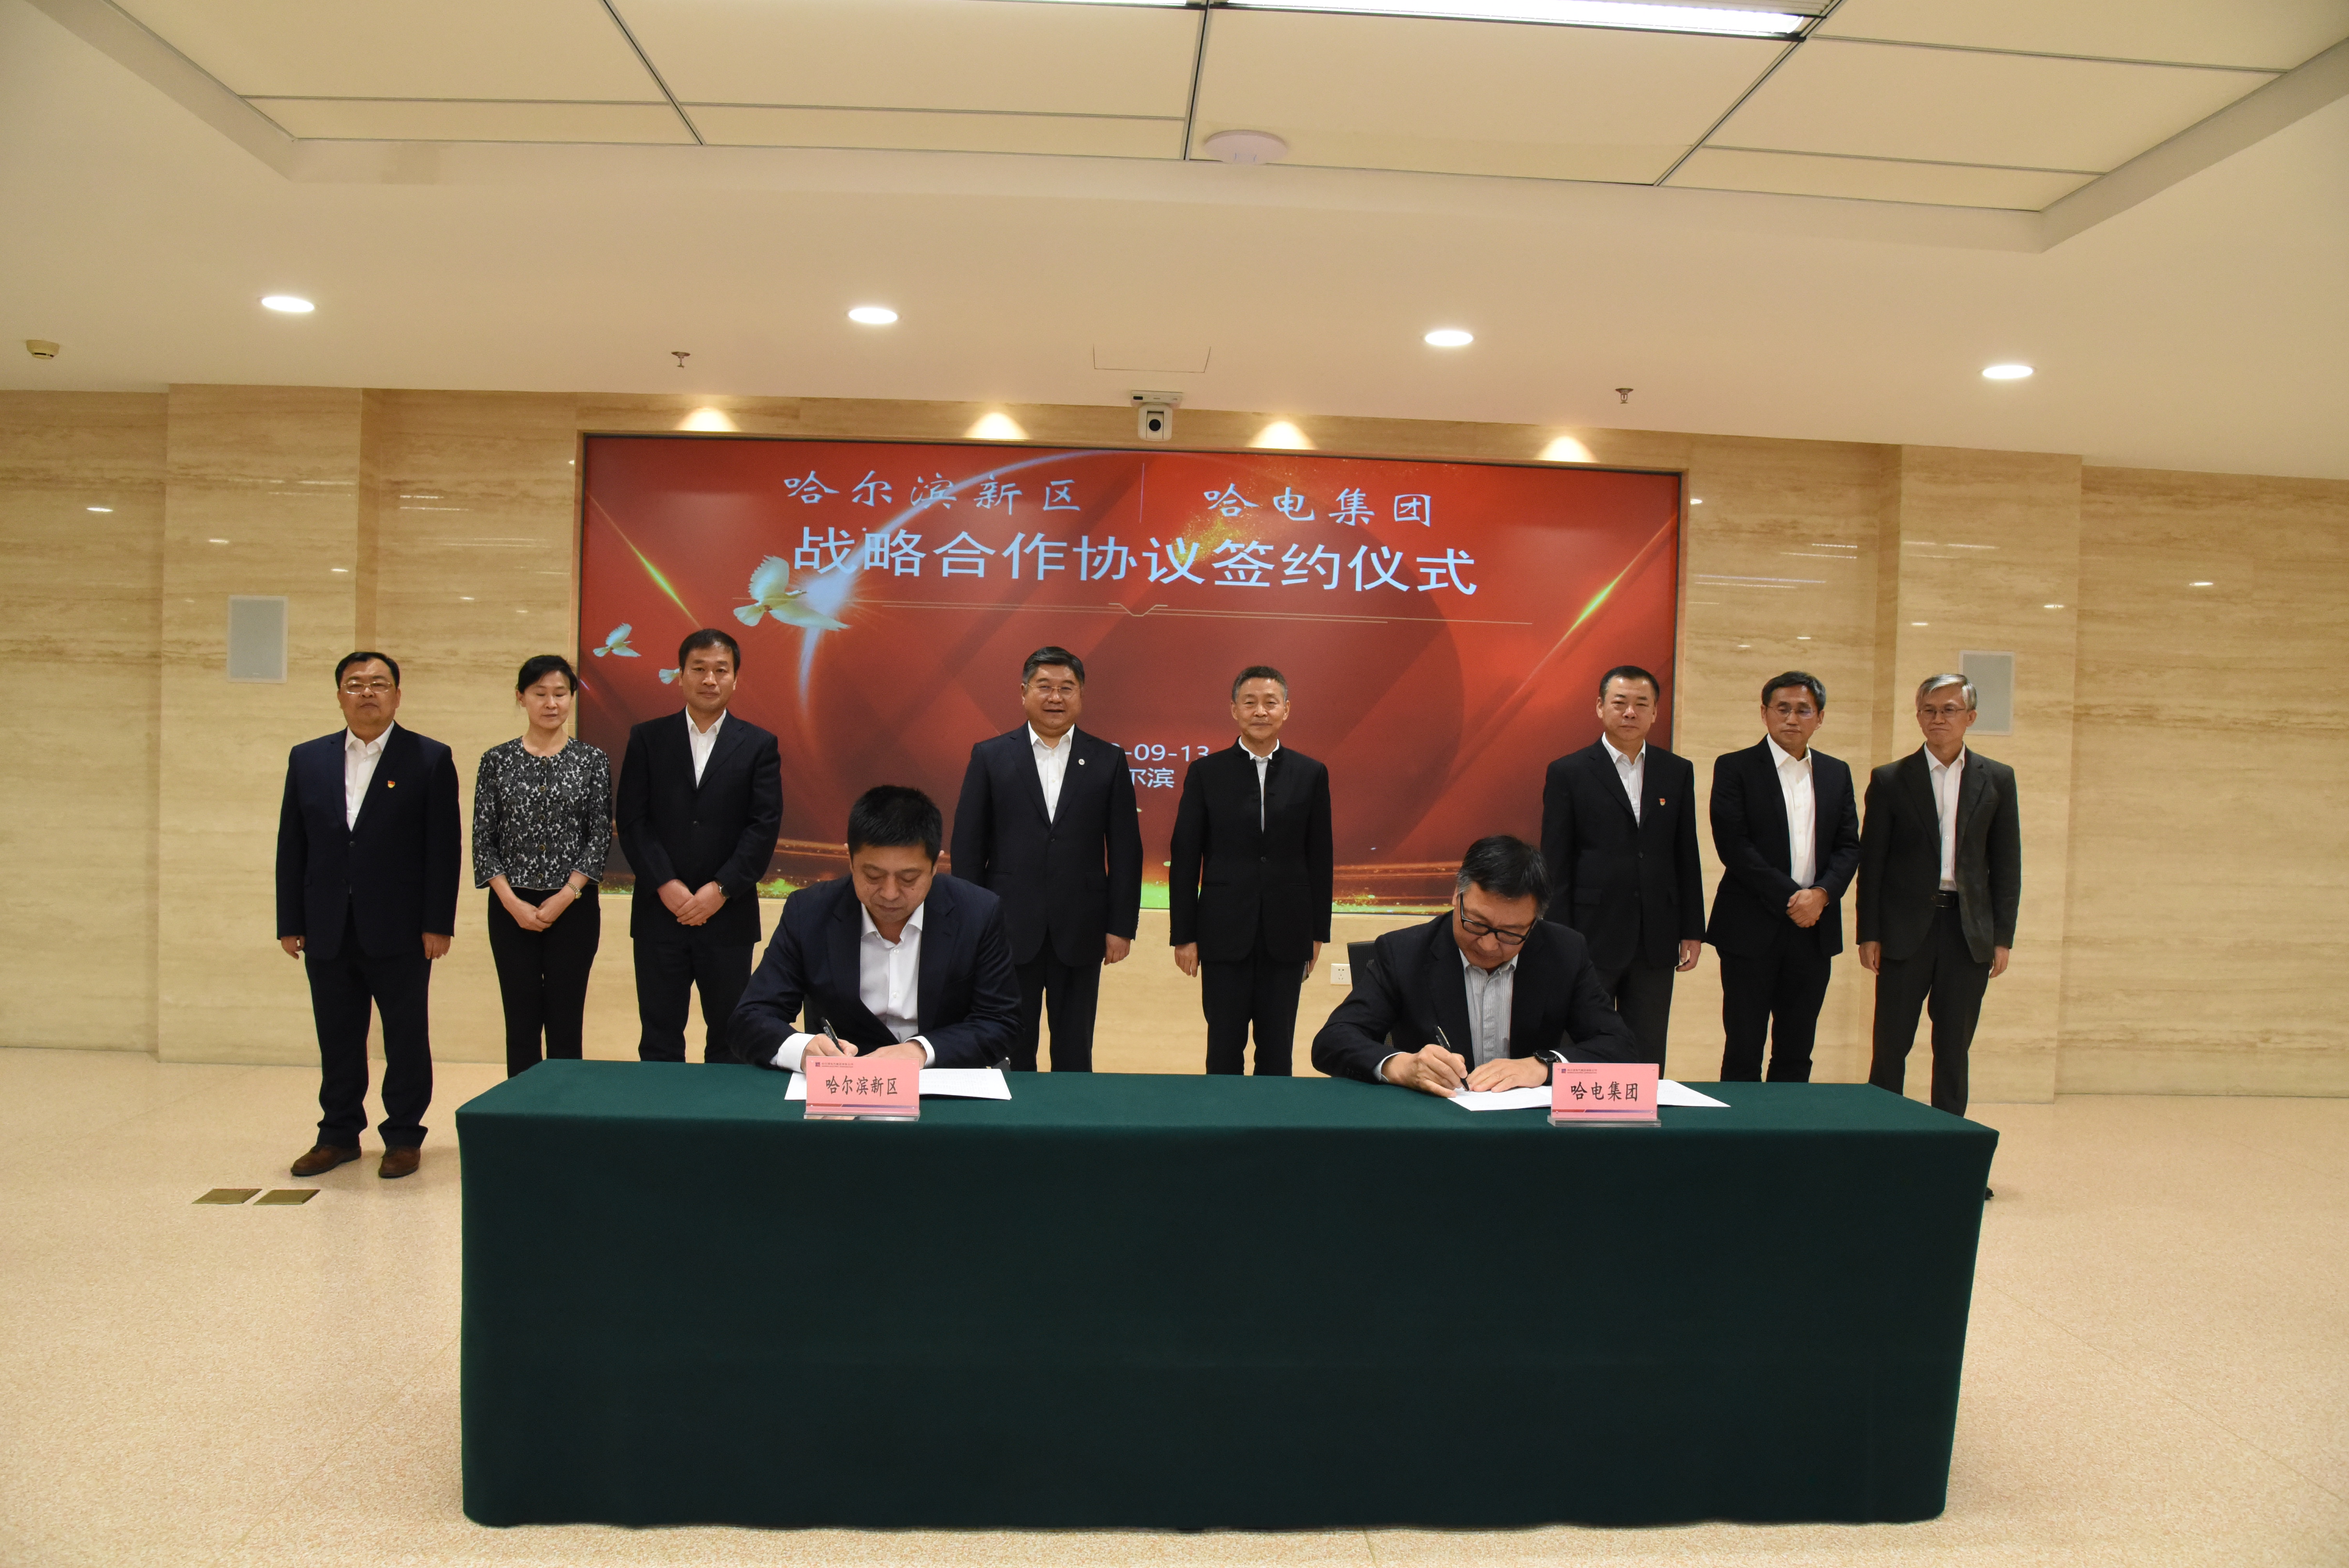 （有修改）（急稿）B【黑龙江】哈电集团与哈尔滨新区签署战略合作协议